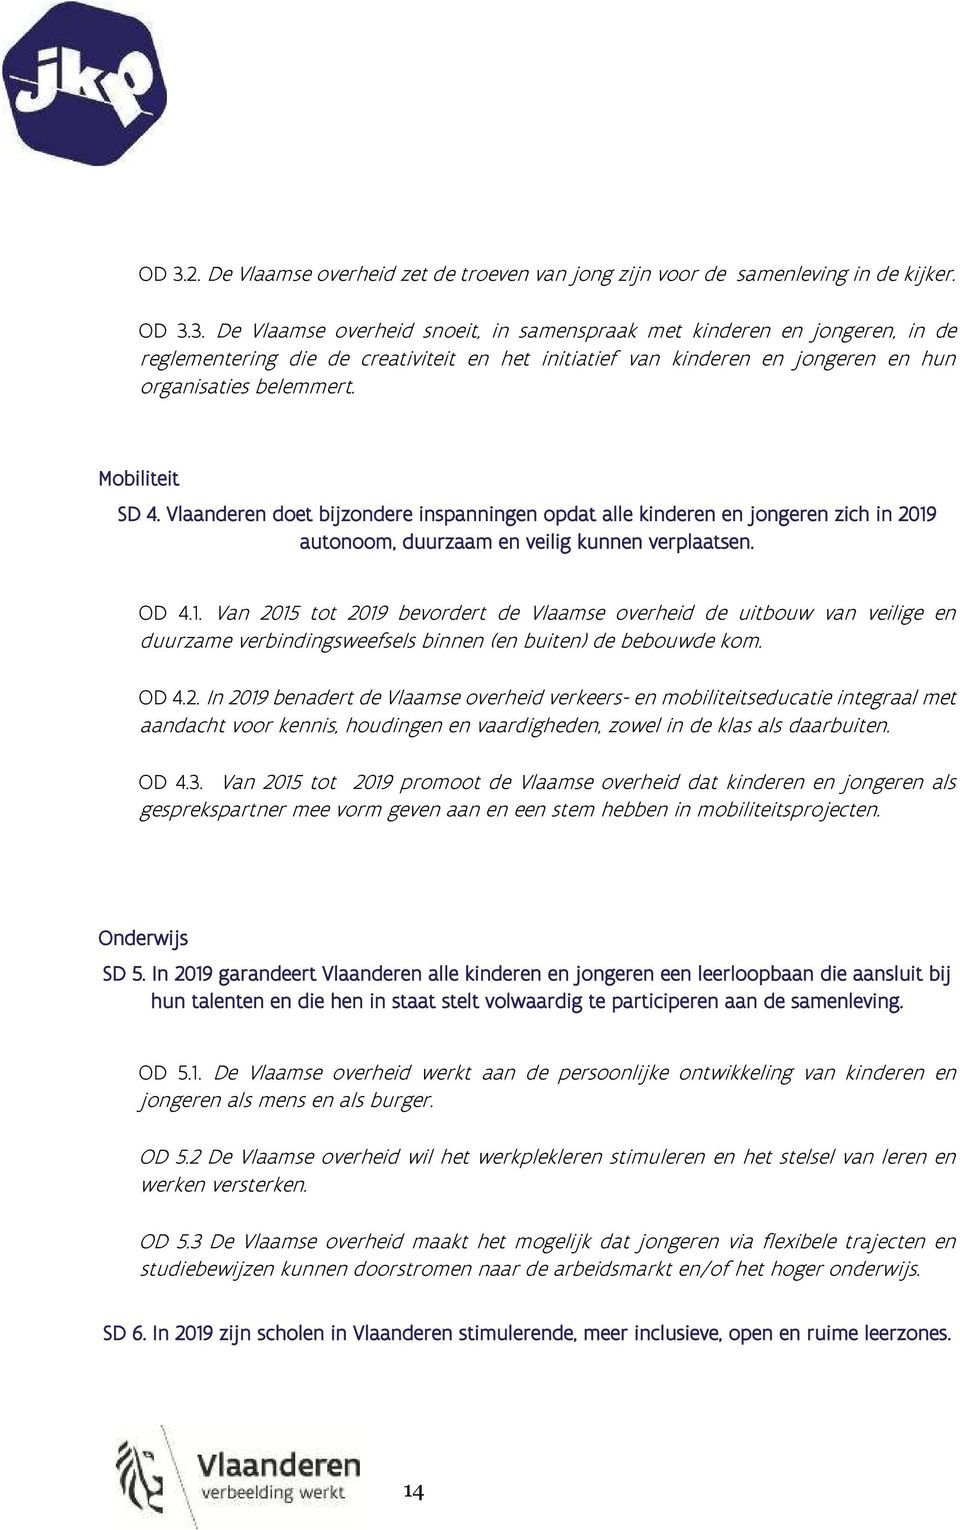 autonoom, duurzaam en veilig kunnen verplaatsen. OD 4.1. Van 2015 tot 2019 bevordert de Vlaamse overheid de uitbouw van veilige en duurzame verbindingsweefsels binnen (en buiten) de bebouwde kom.